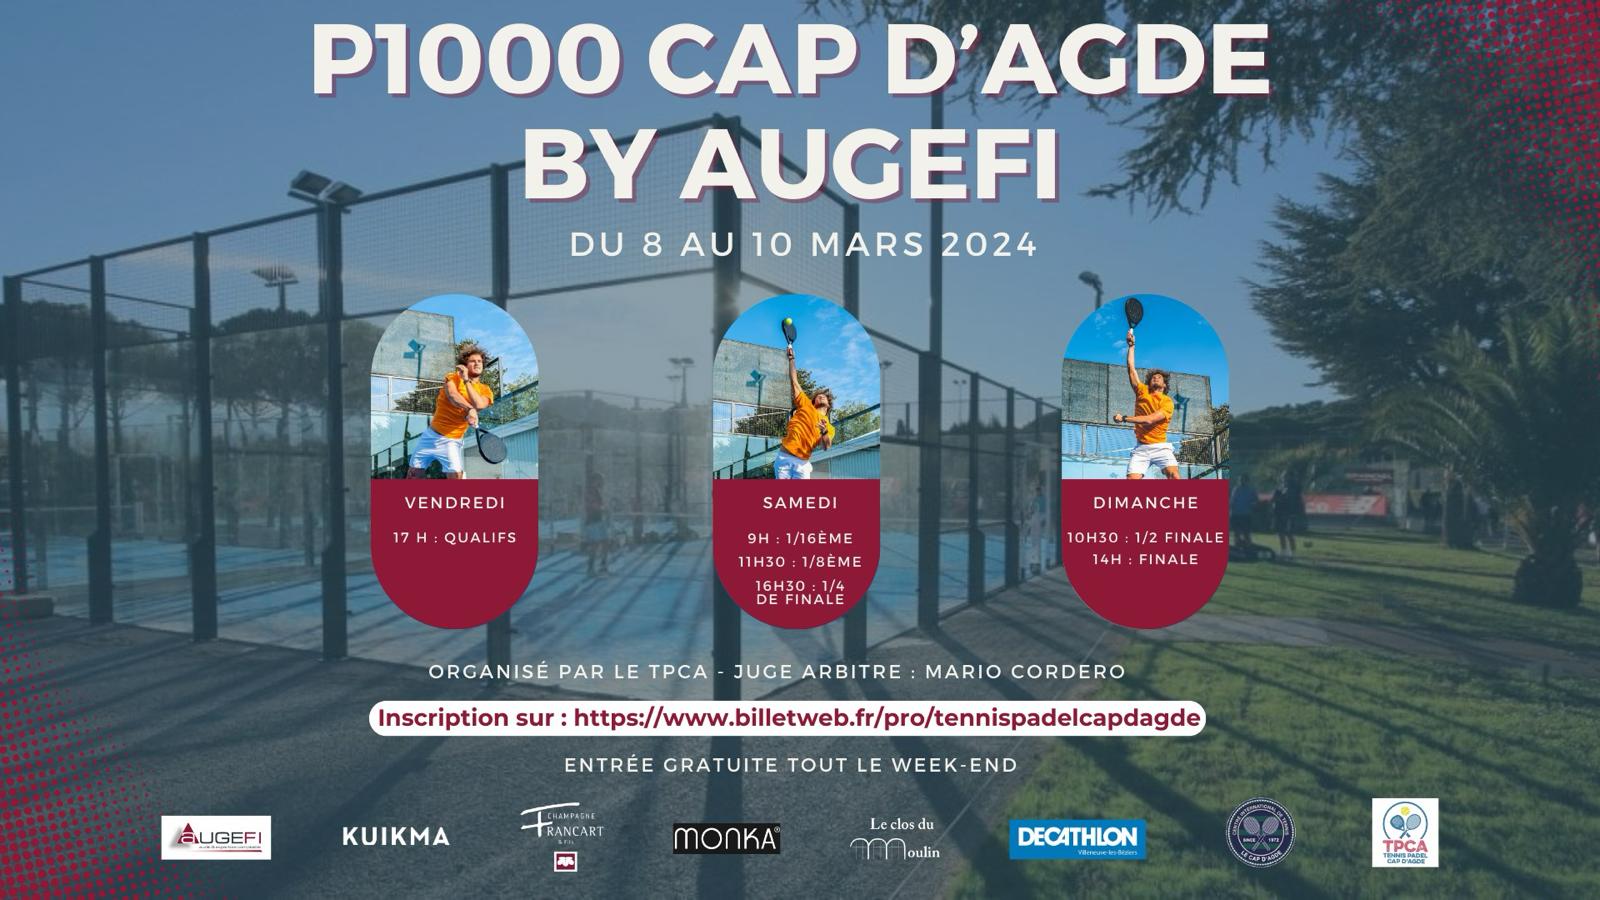 O P1000 Cap d'Agde da Augefi de 8 a 10 de março de 2024!